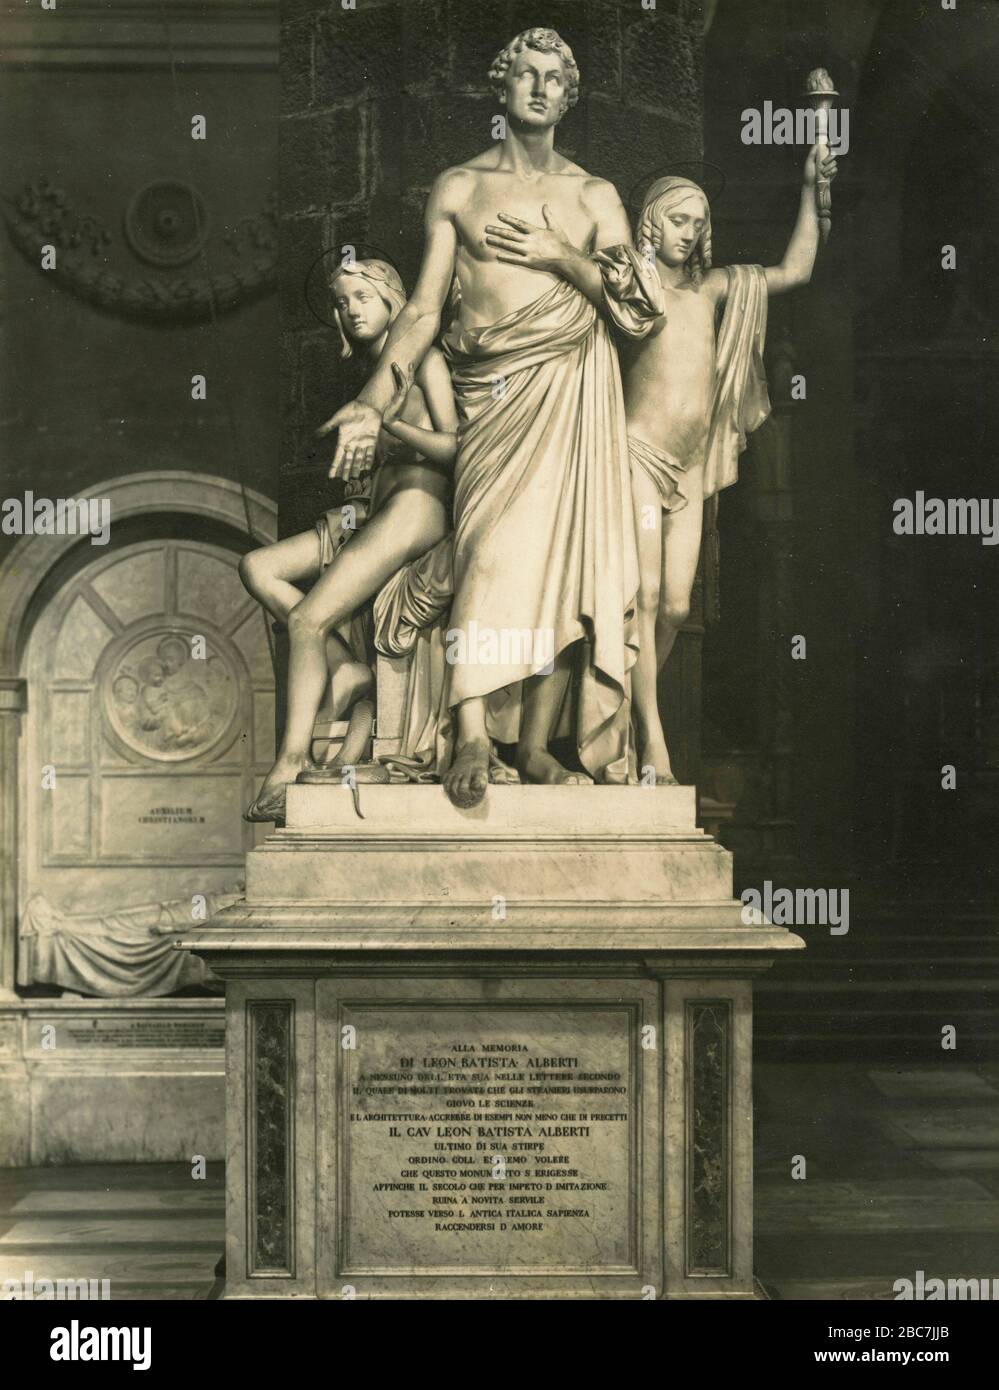 Denkmal für Leon Battista Alberti, Marmorstatue des italienischen Künstlers L. Bartolini, Heilig-Kreuz-Kirche, Florenz, Italien 1920er Jahre Stockfoto